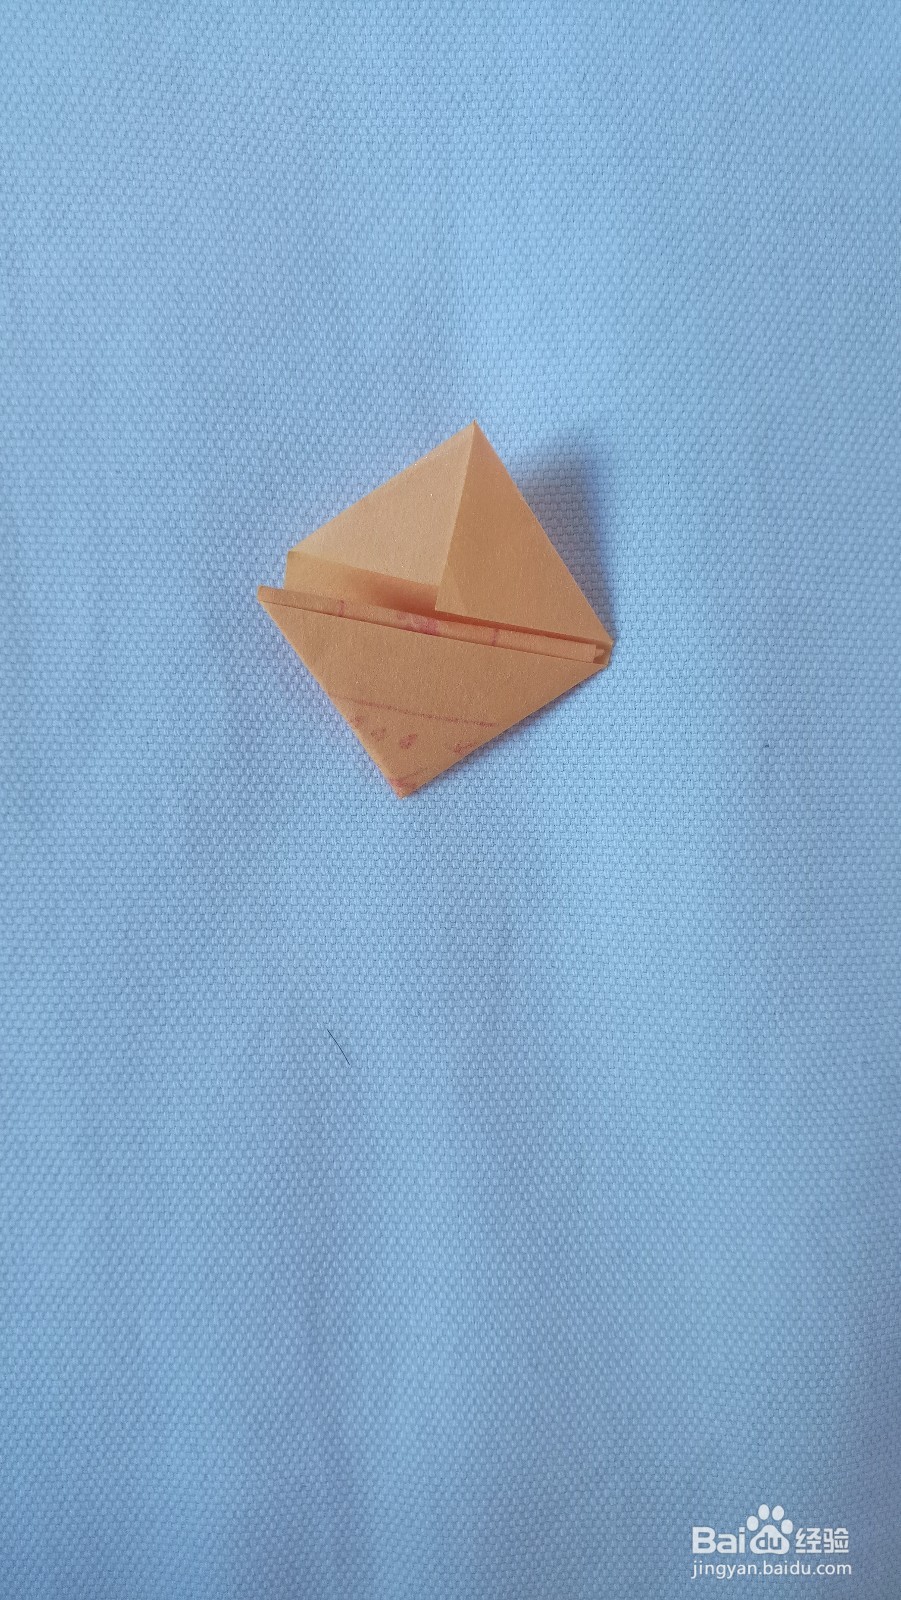 符怎么折叠成三角